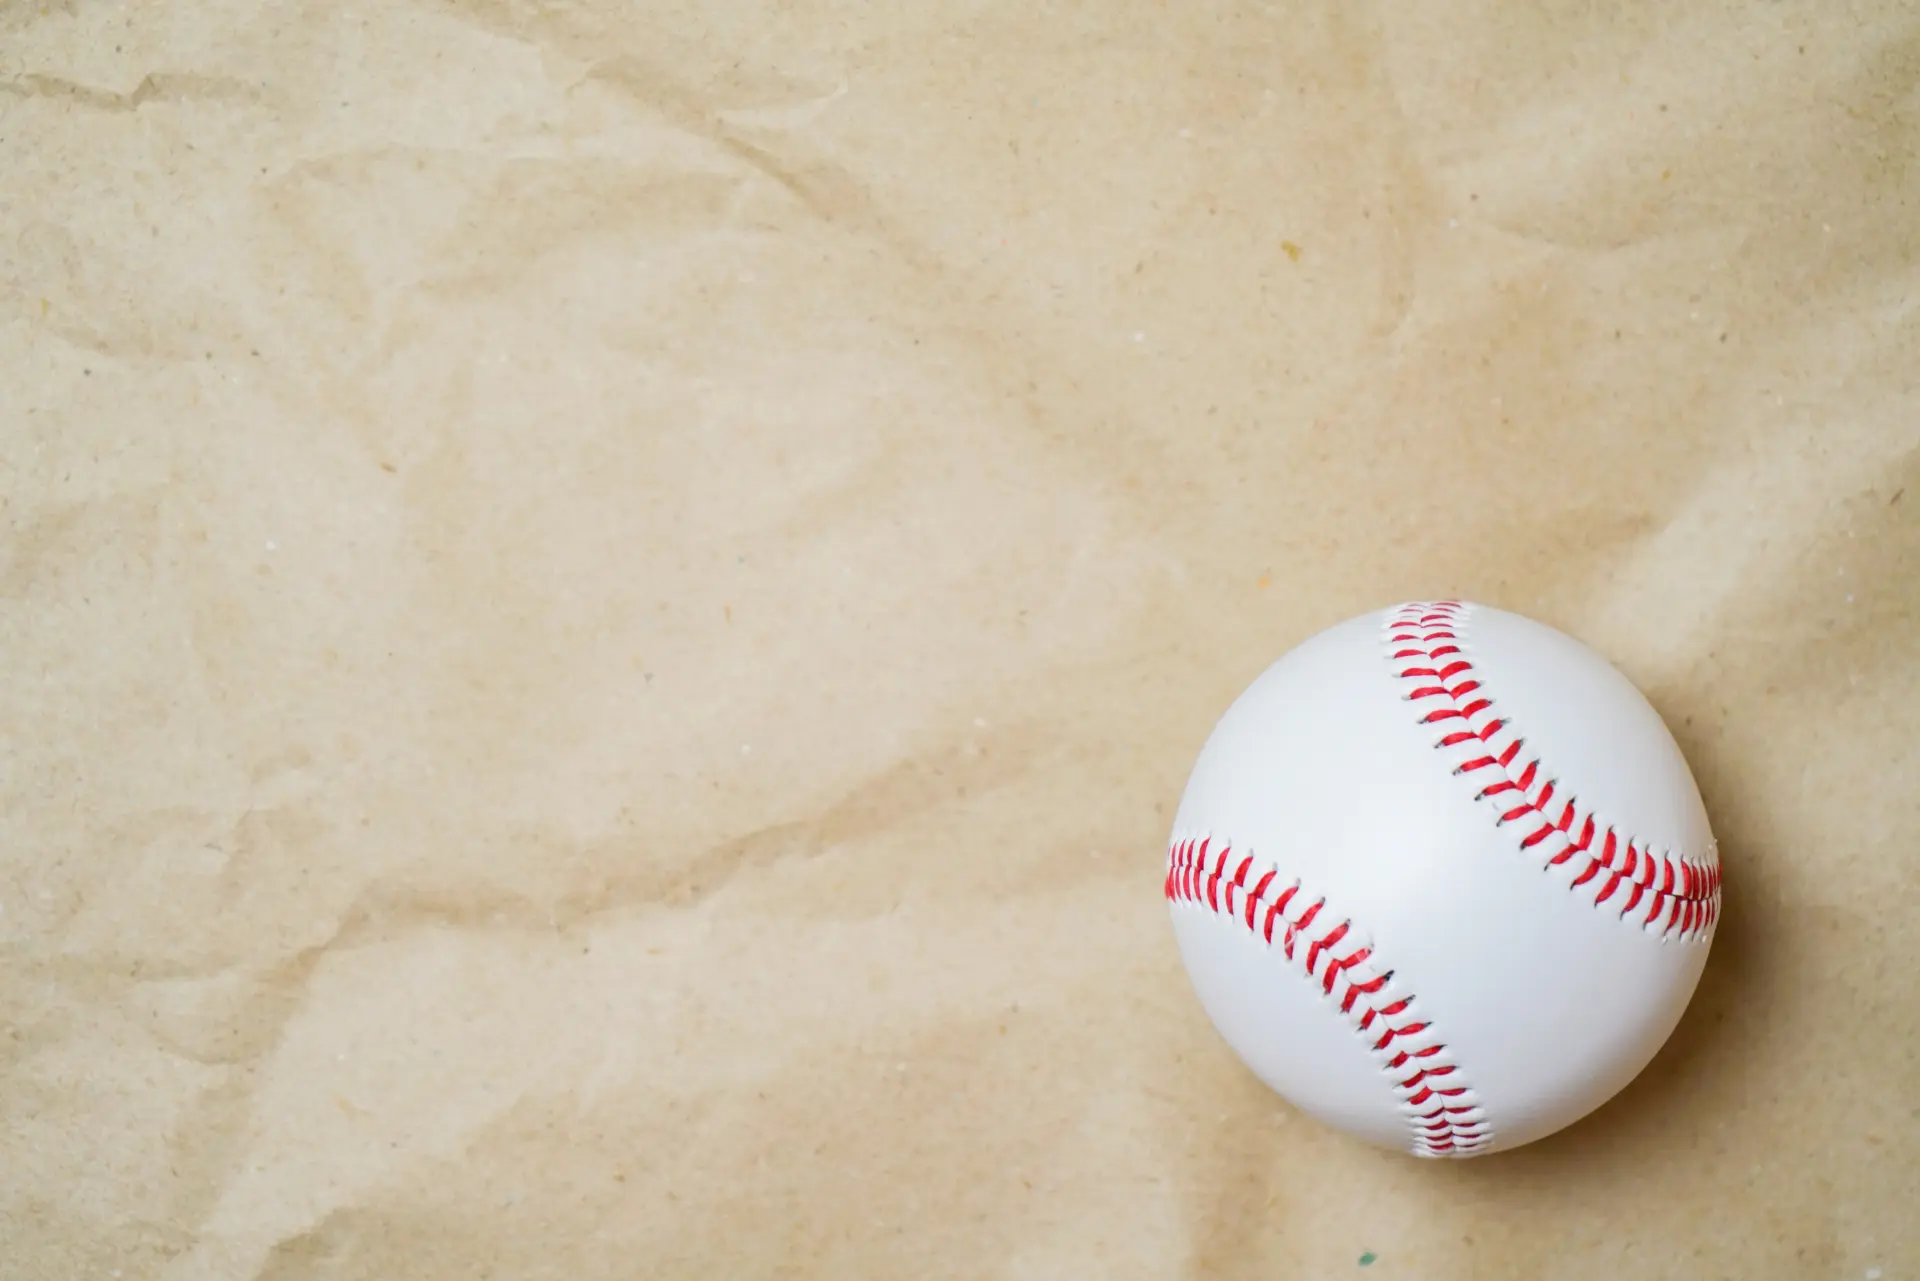 打てない 飛ばないなら 砂鉄入りの重いボールで飛ばす力をつける 北海道少年野球アップデート